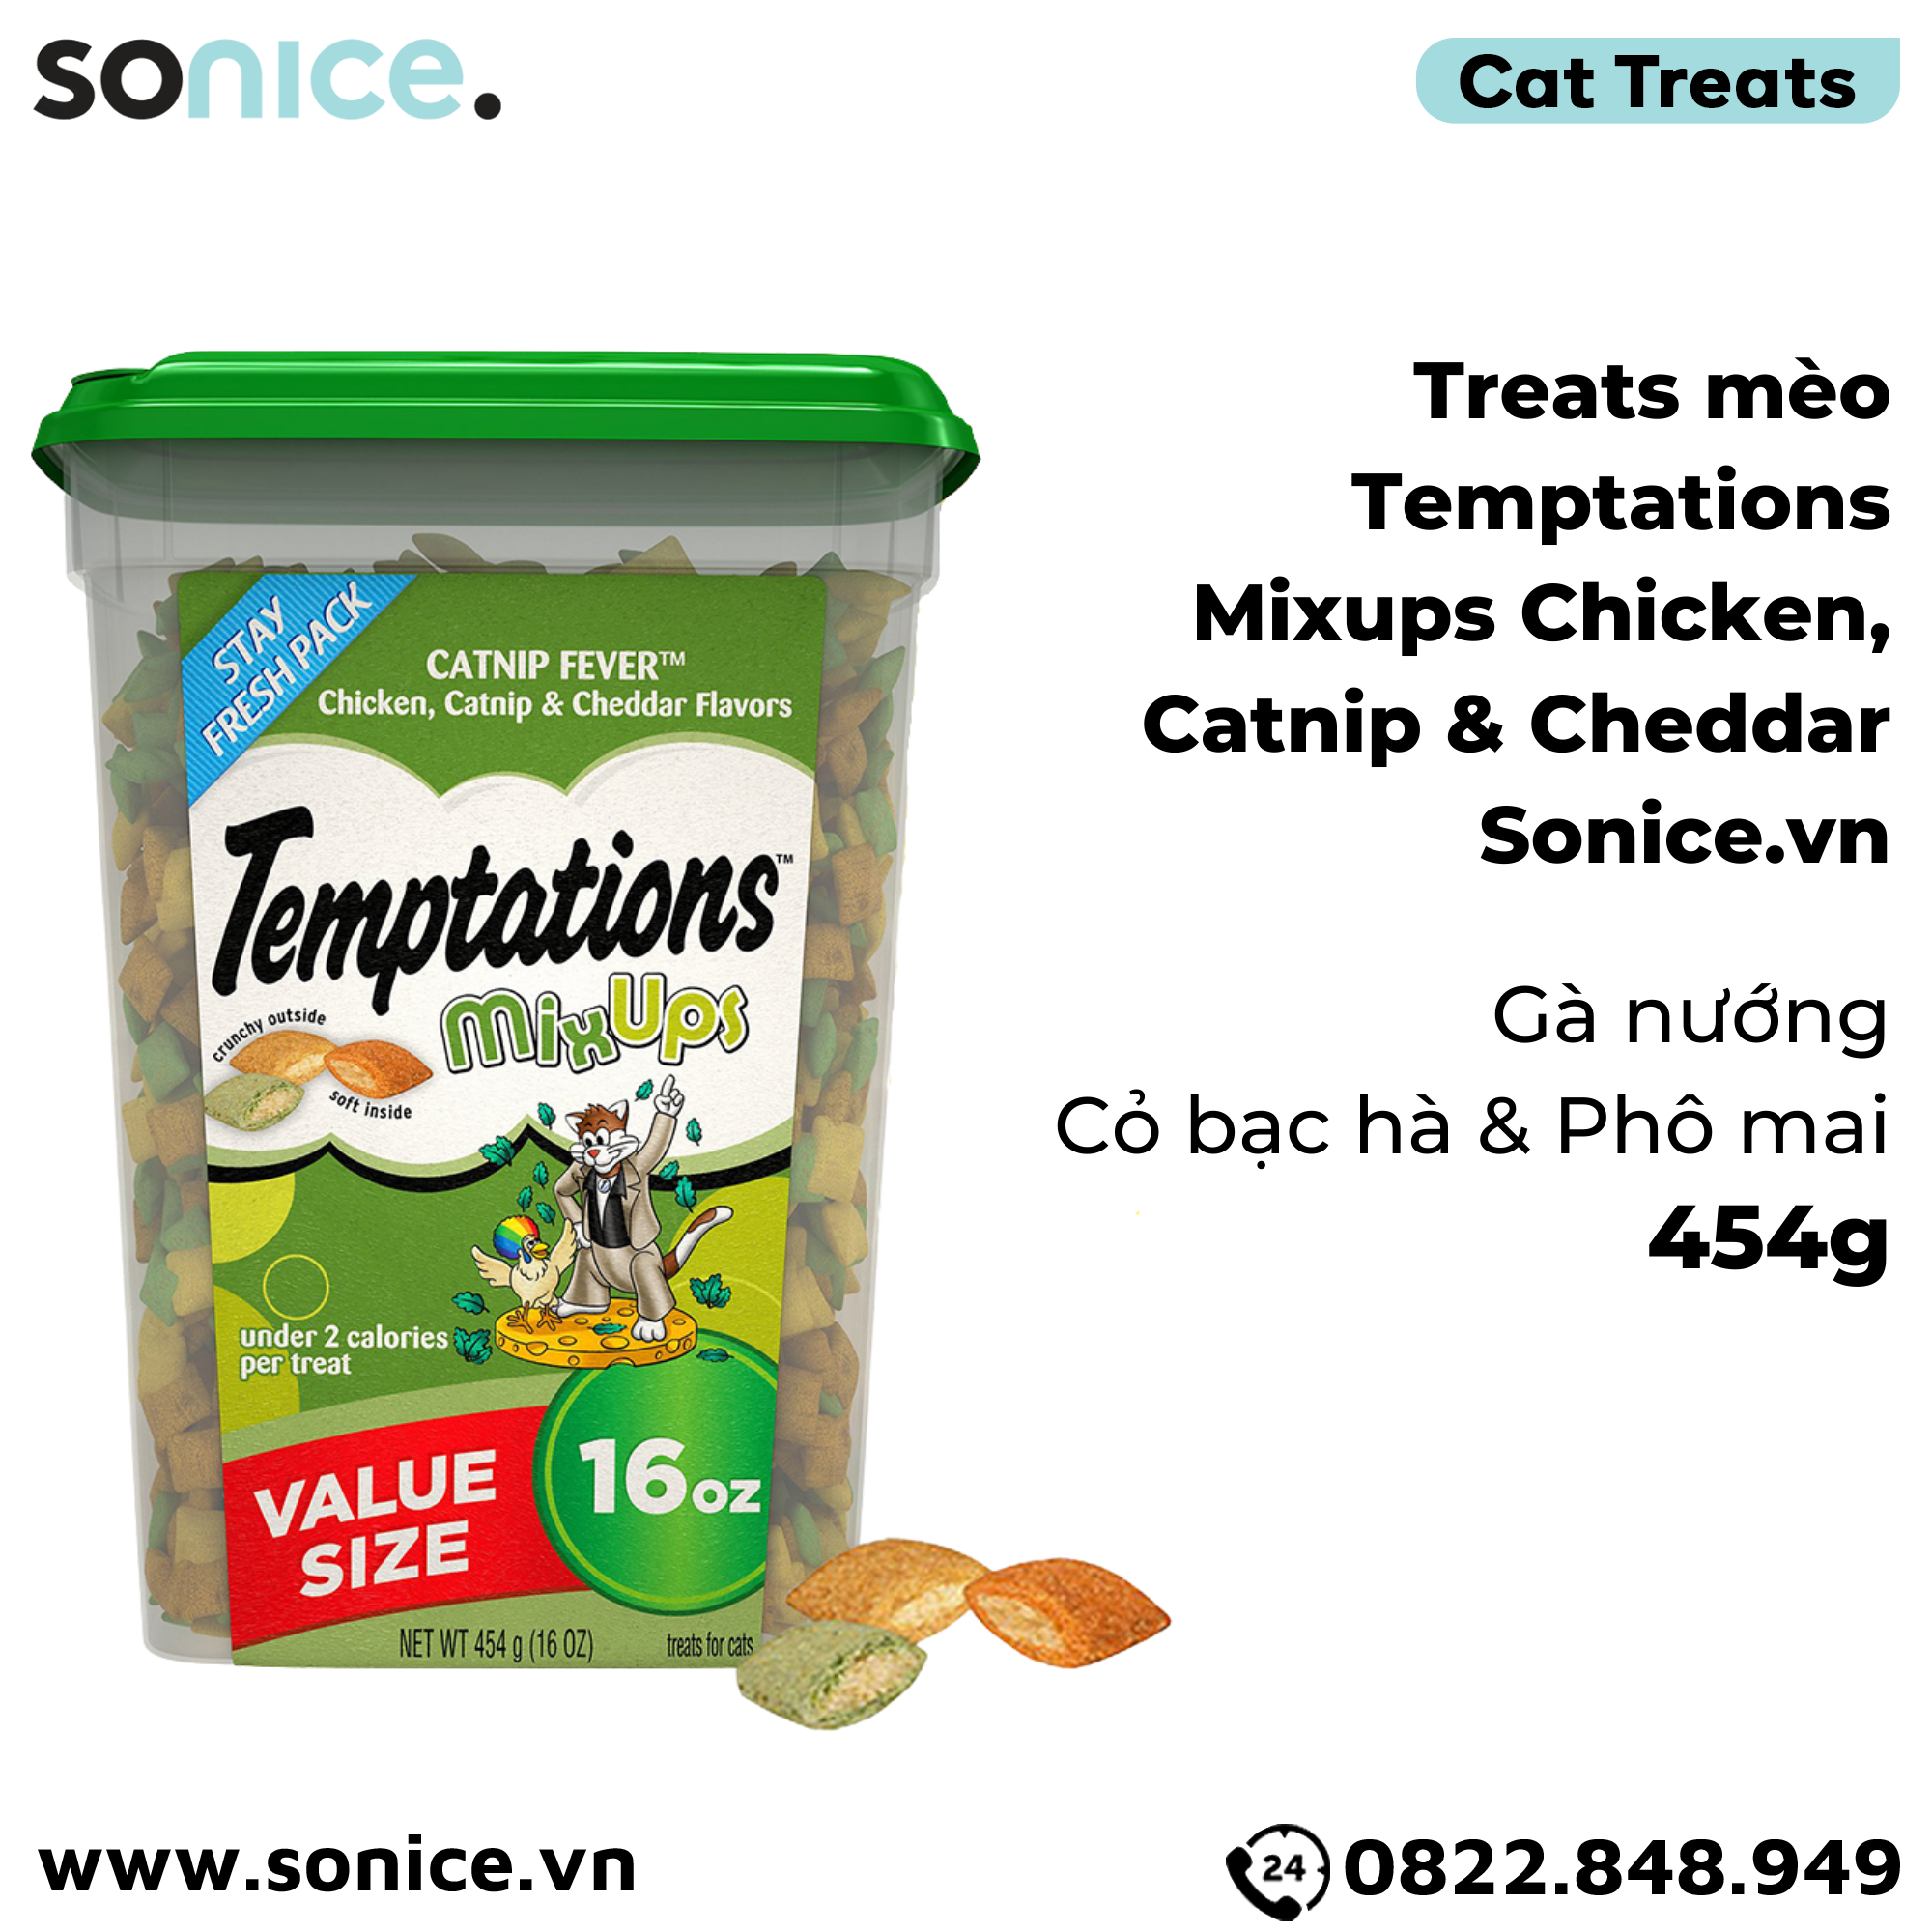  Treat mèo Temptations Mixups Chicken, Catnip, Cheddar 454g - vị gà nướng, cỏ bạc hà, phô mai SONICE. 